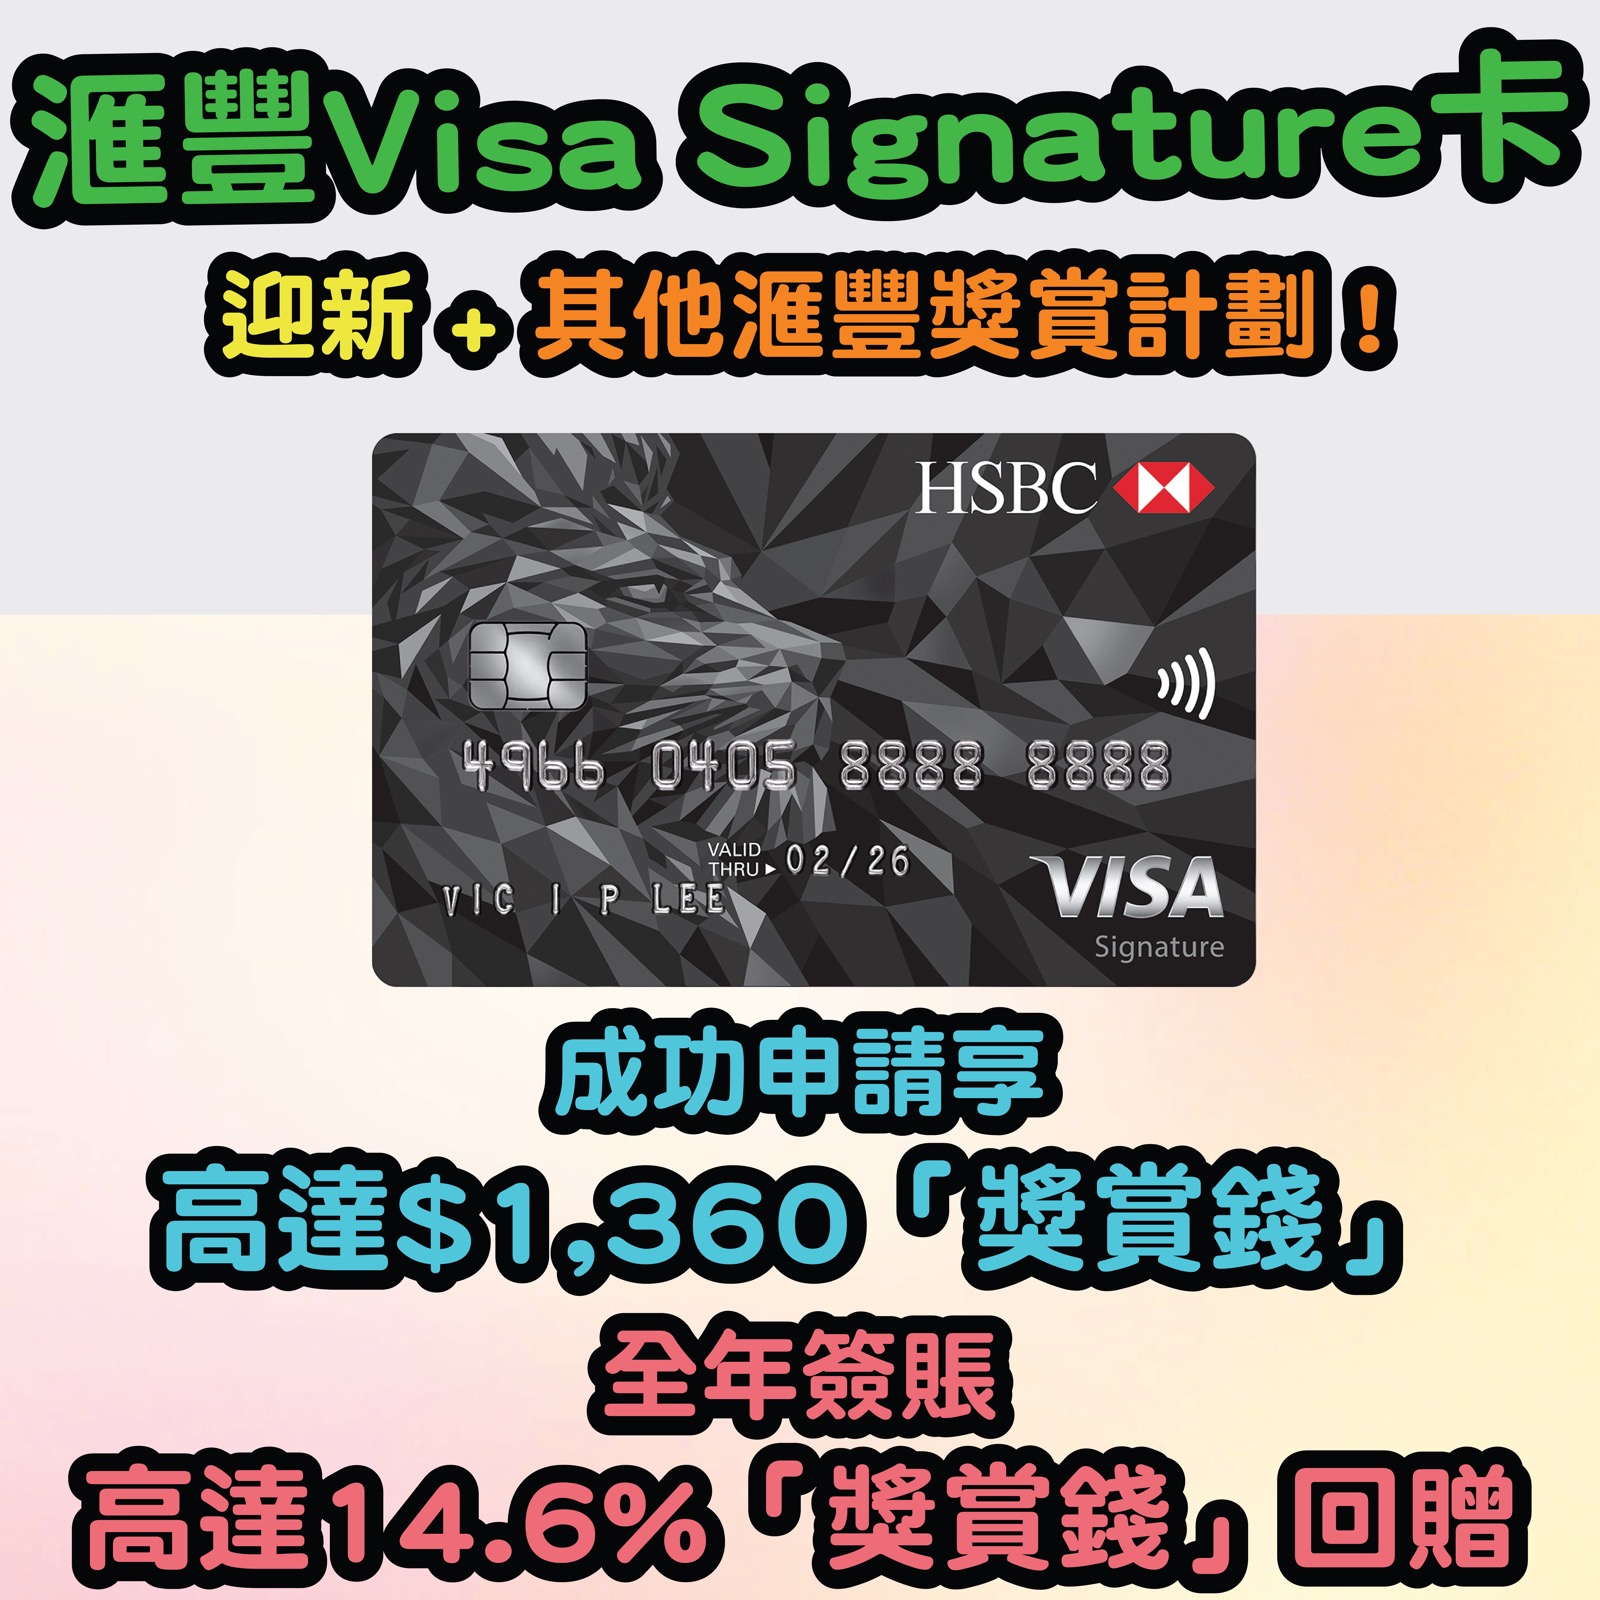 【滙豐Visa Signature卡】迎新 + 簽賬享高達$1,360「獎賞錢」，全年簽賬高達3.6%「獎賞錢」回贈！